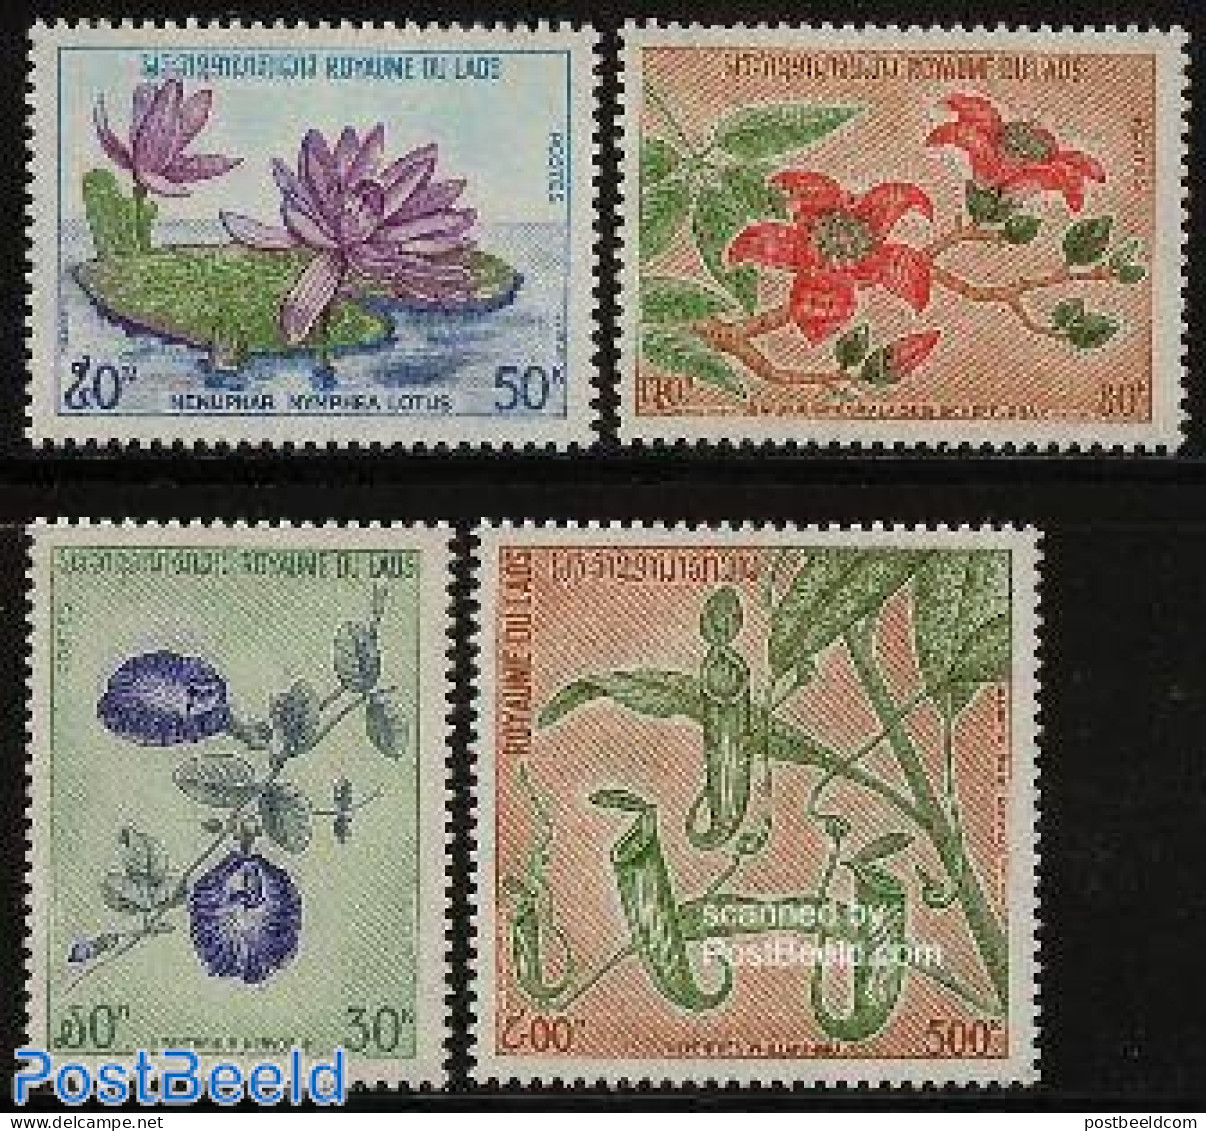 Laos 1974 Wild Flowers 4v, Mint NH, Nature - Flowers & Plants - Laos